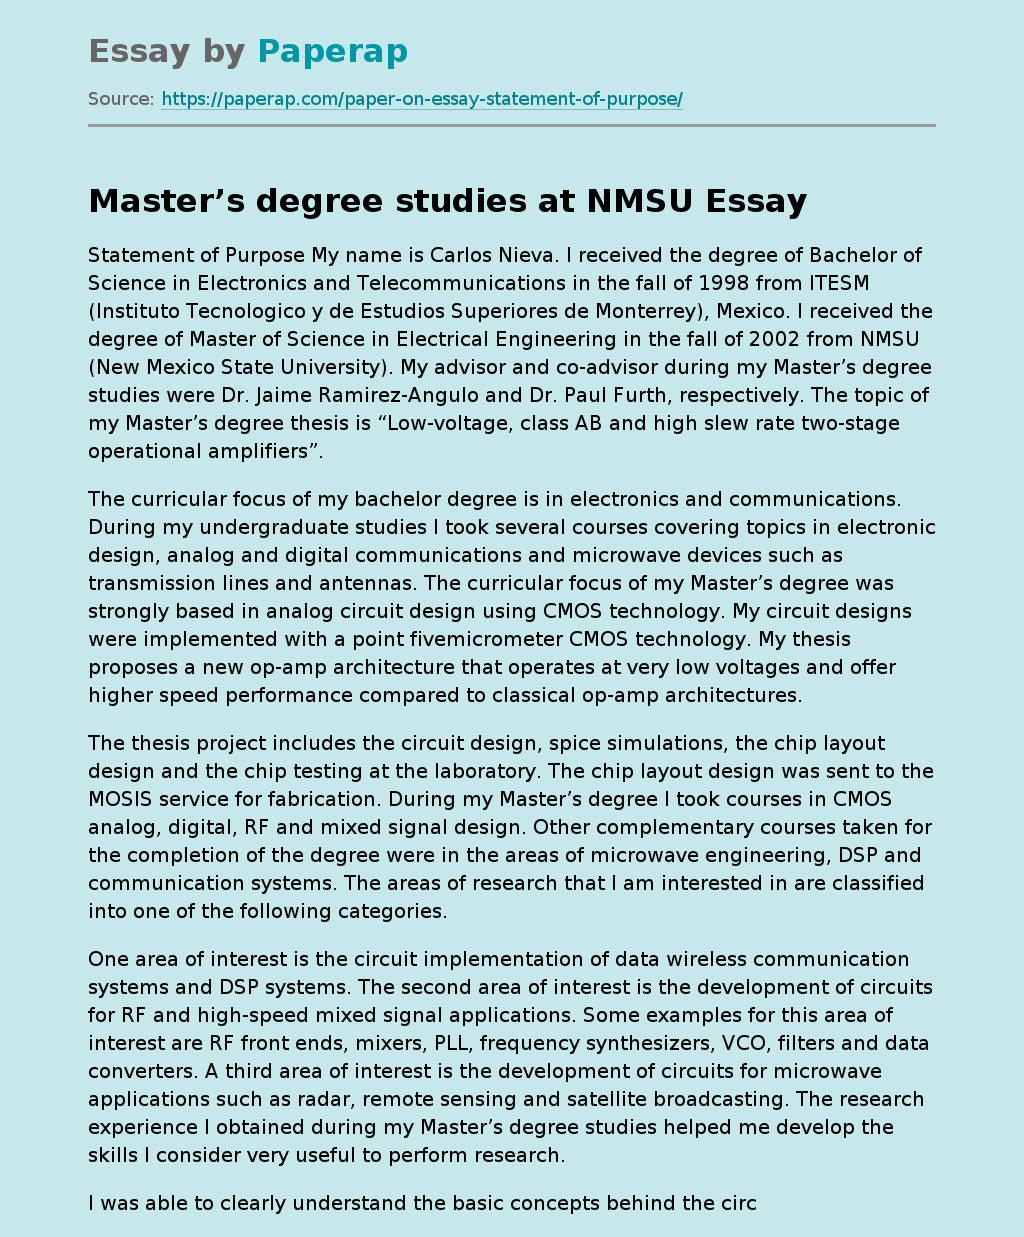 Master’s Degree Studies at NMSU